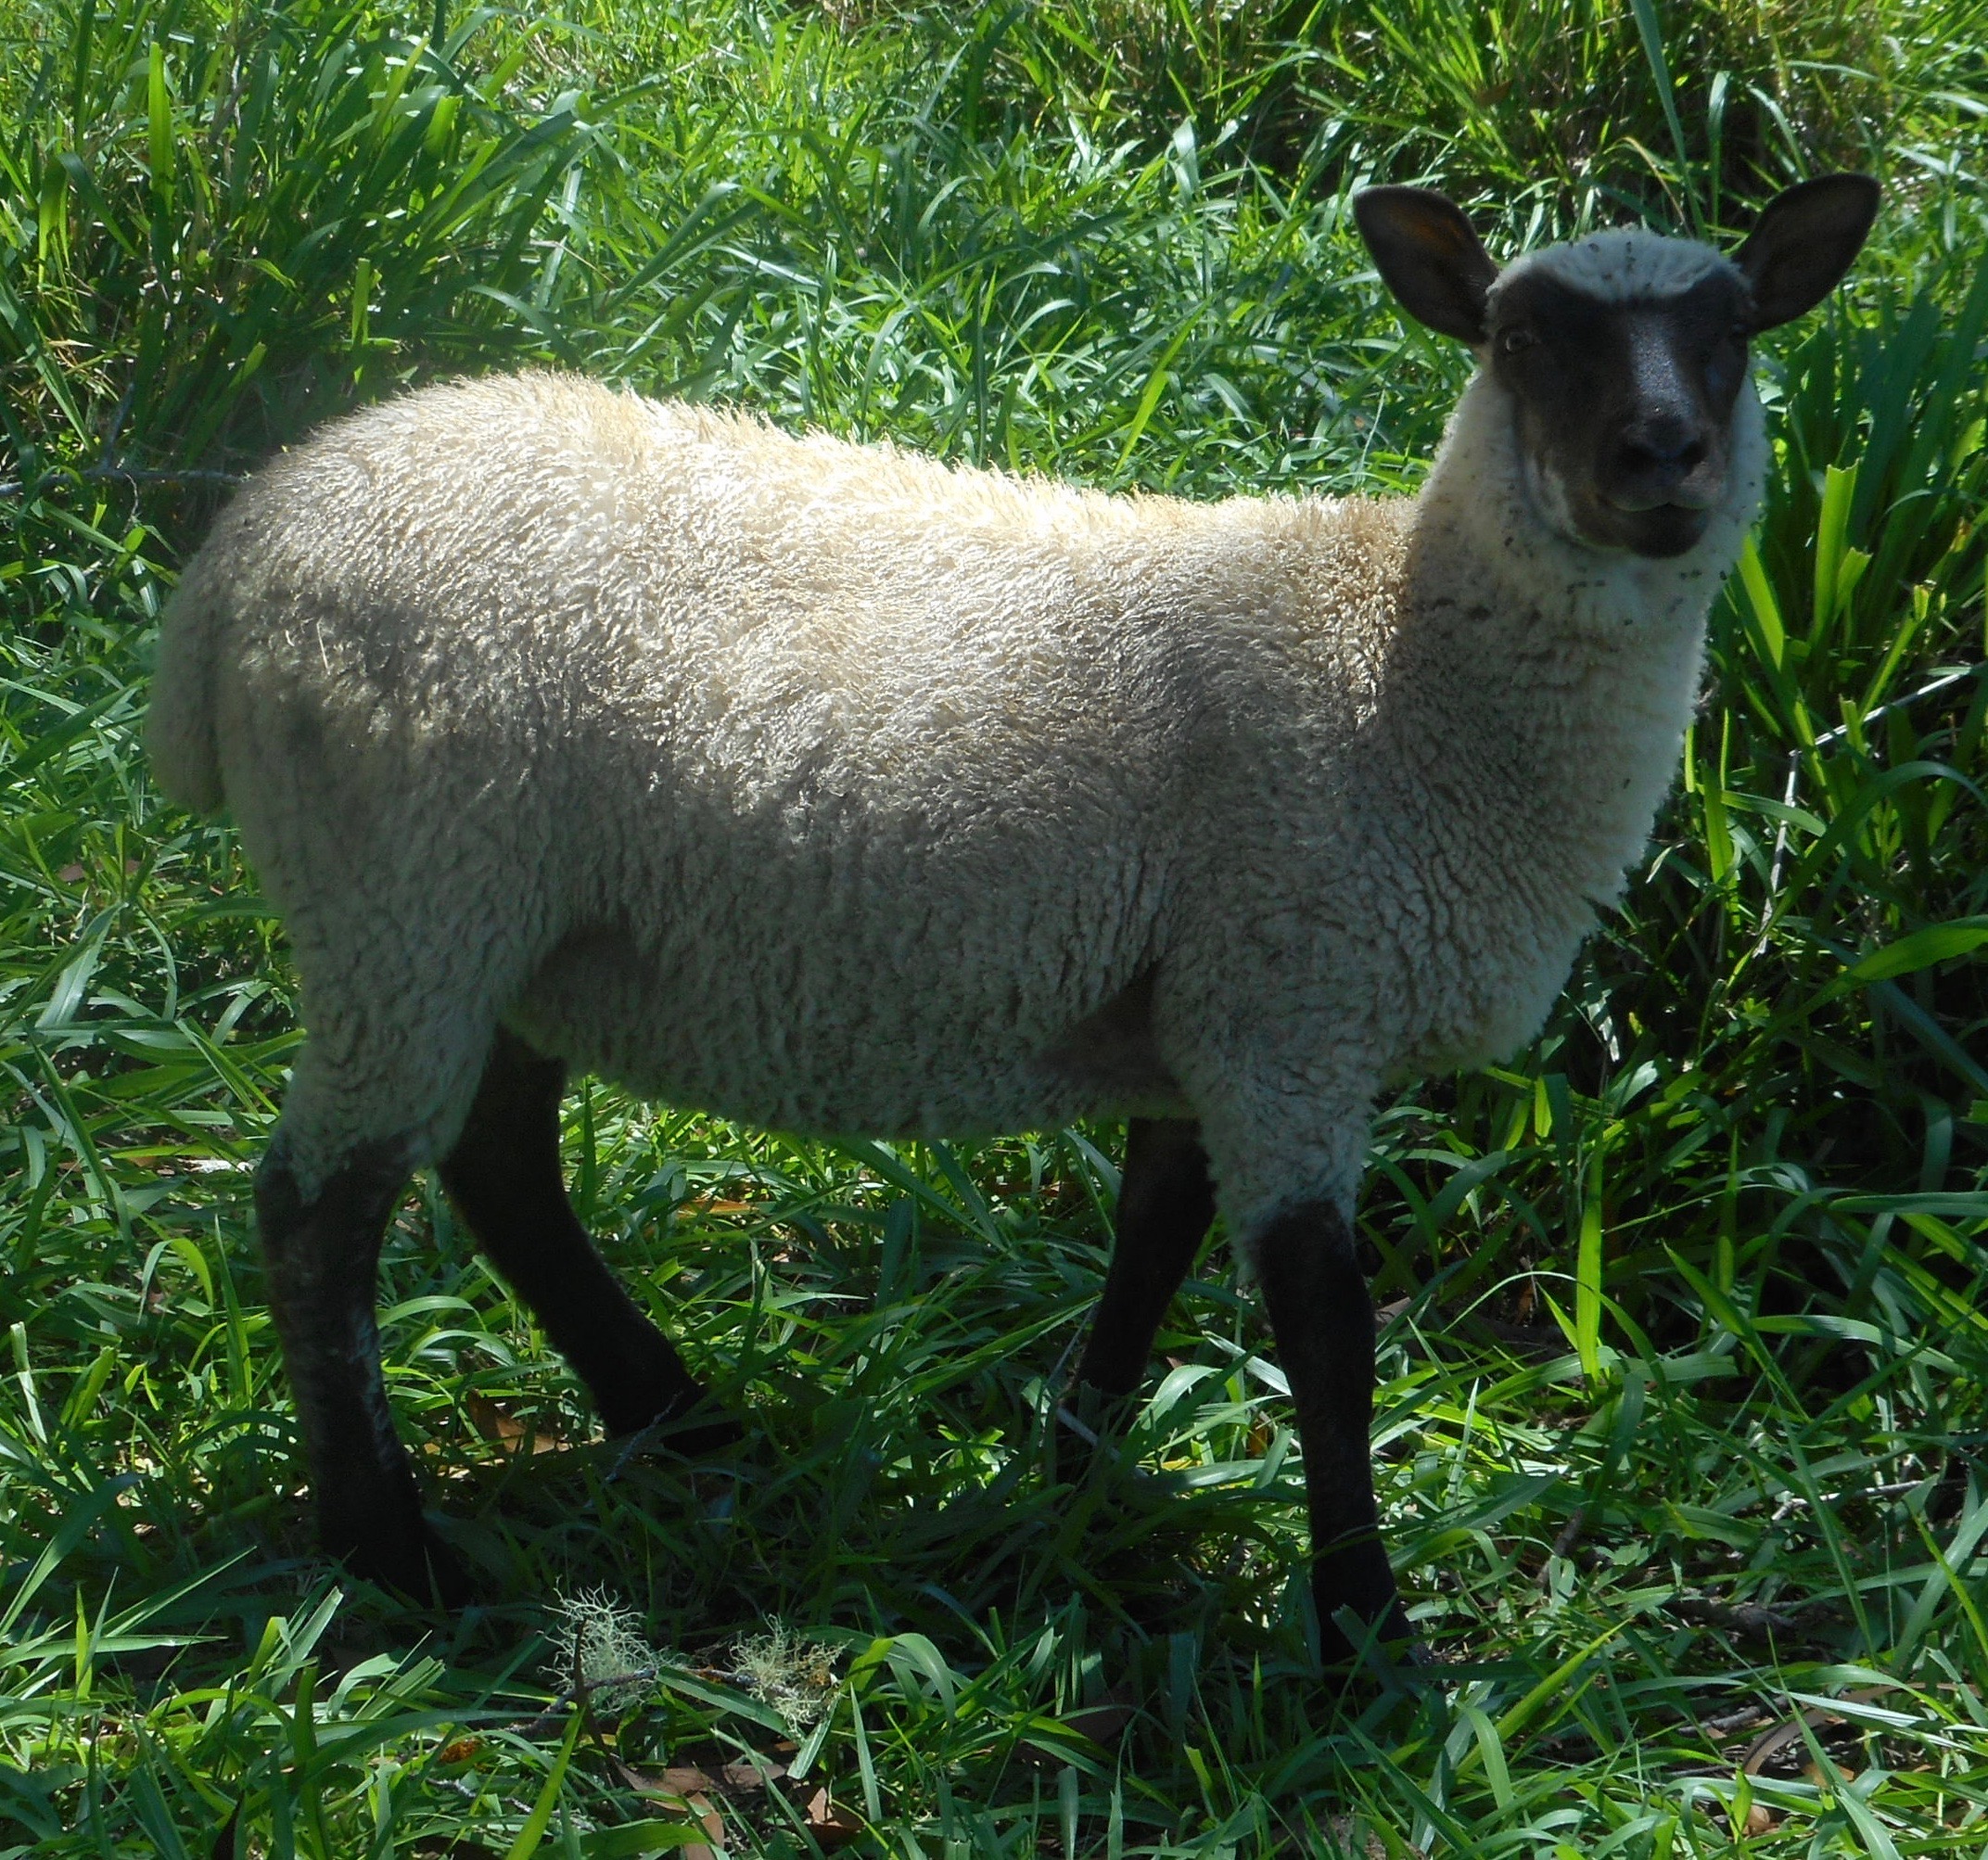 Ewe lamb